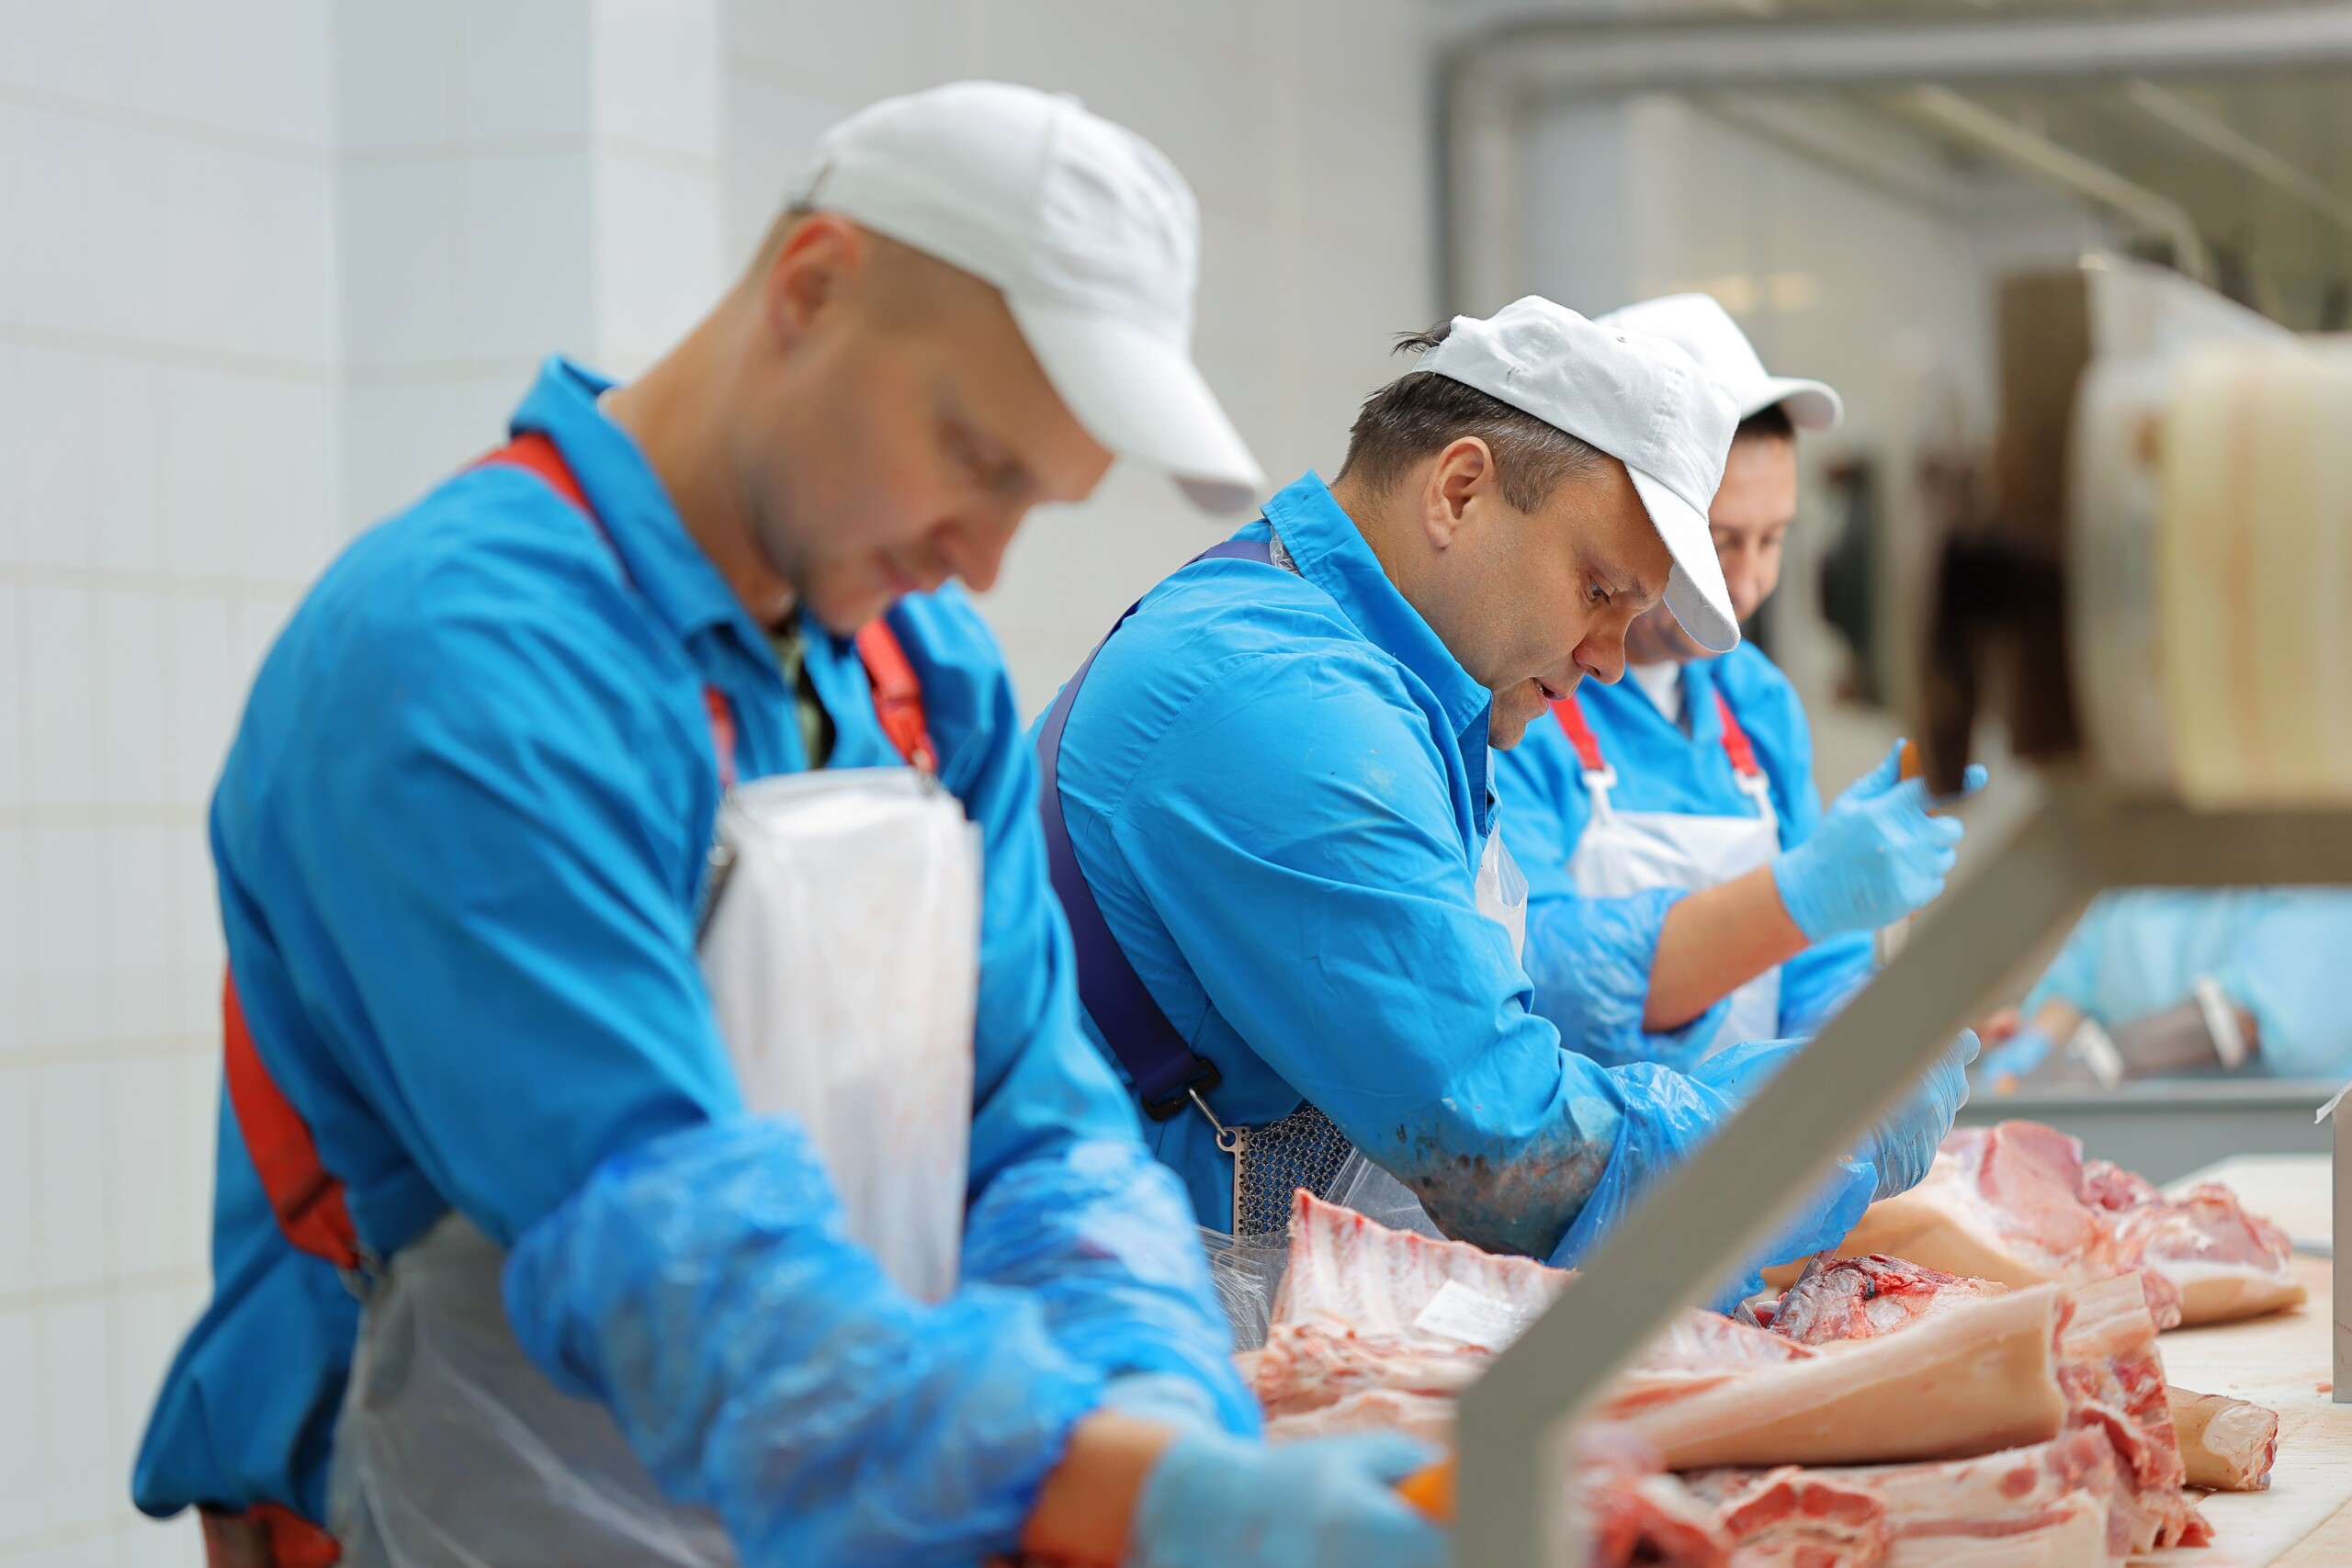 ОАО «Слонимский мясокомбинат» проводит набор рабочих по професиям: обвальщик мяса, жиловщик мяса и субпродуктов